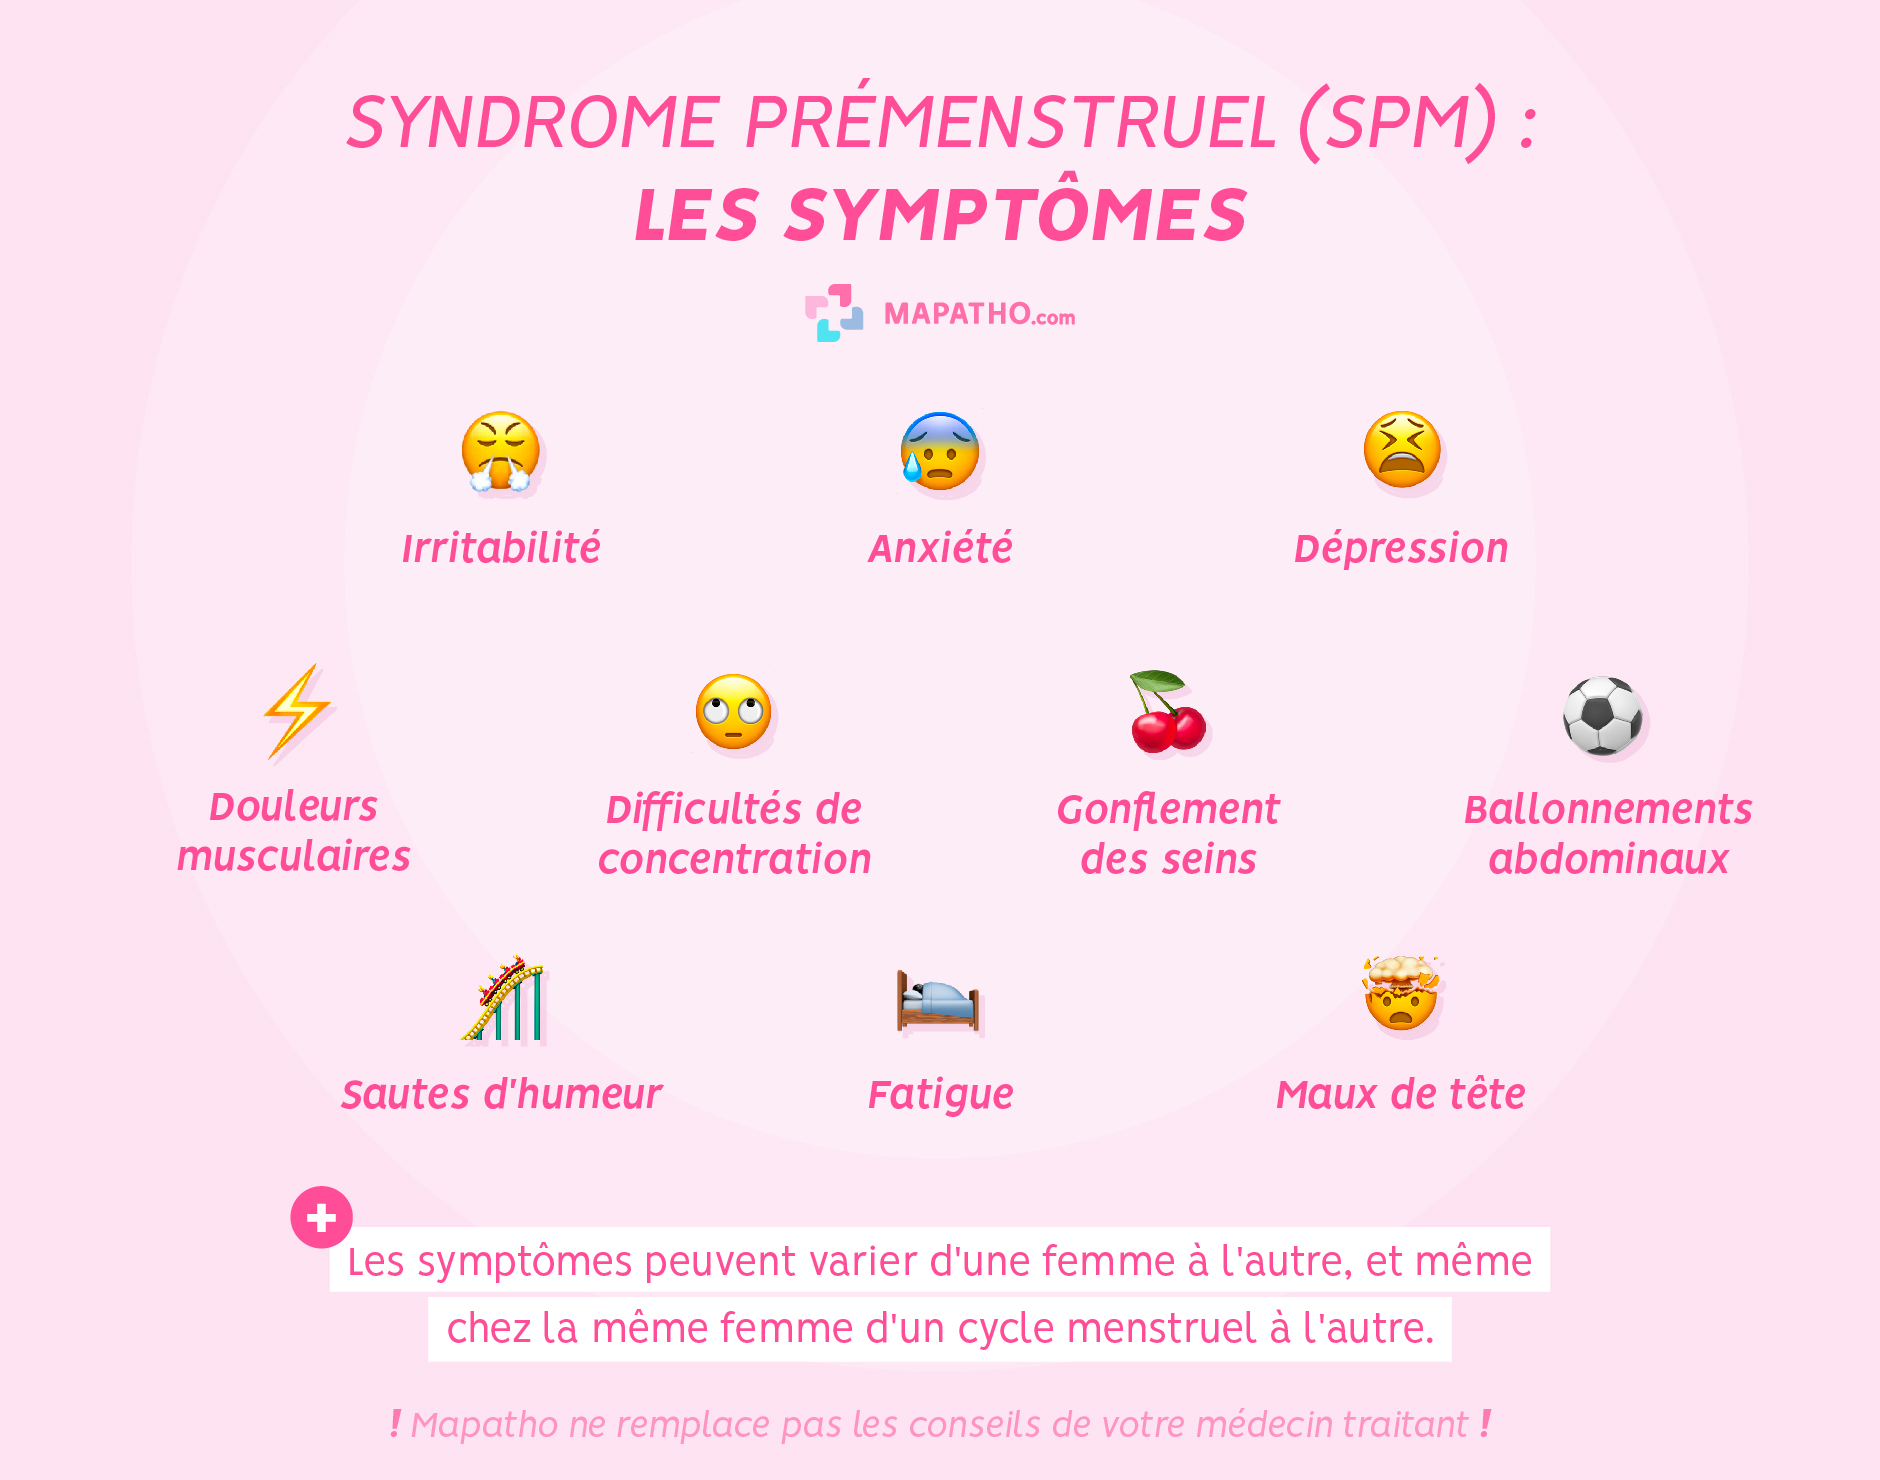 Les symptômes du SPM